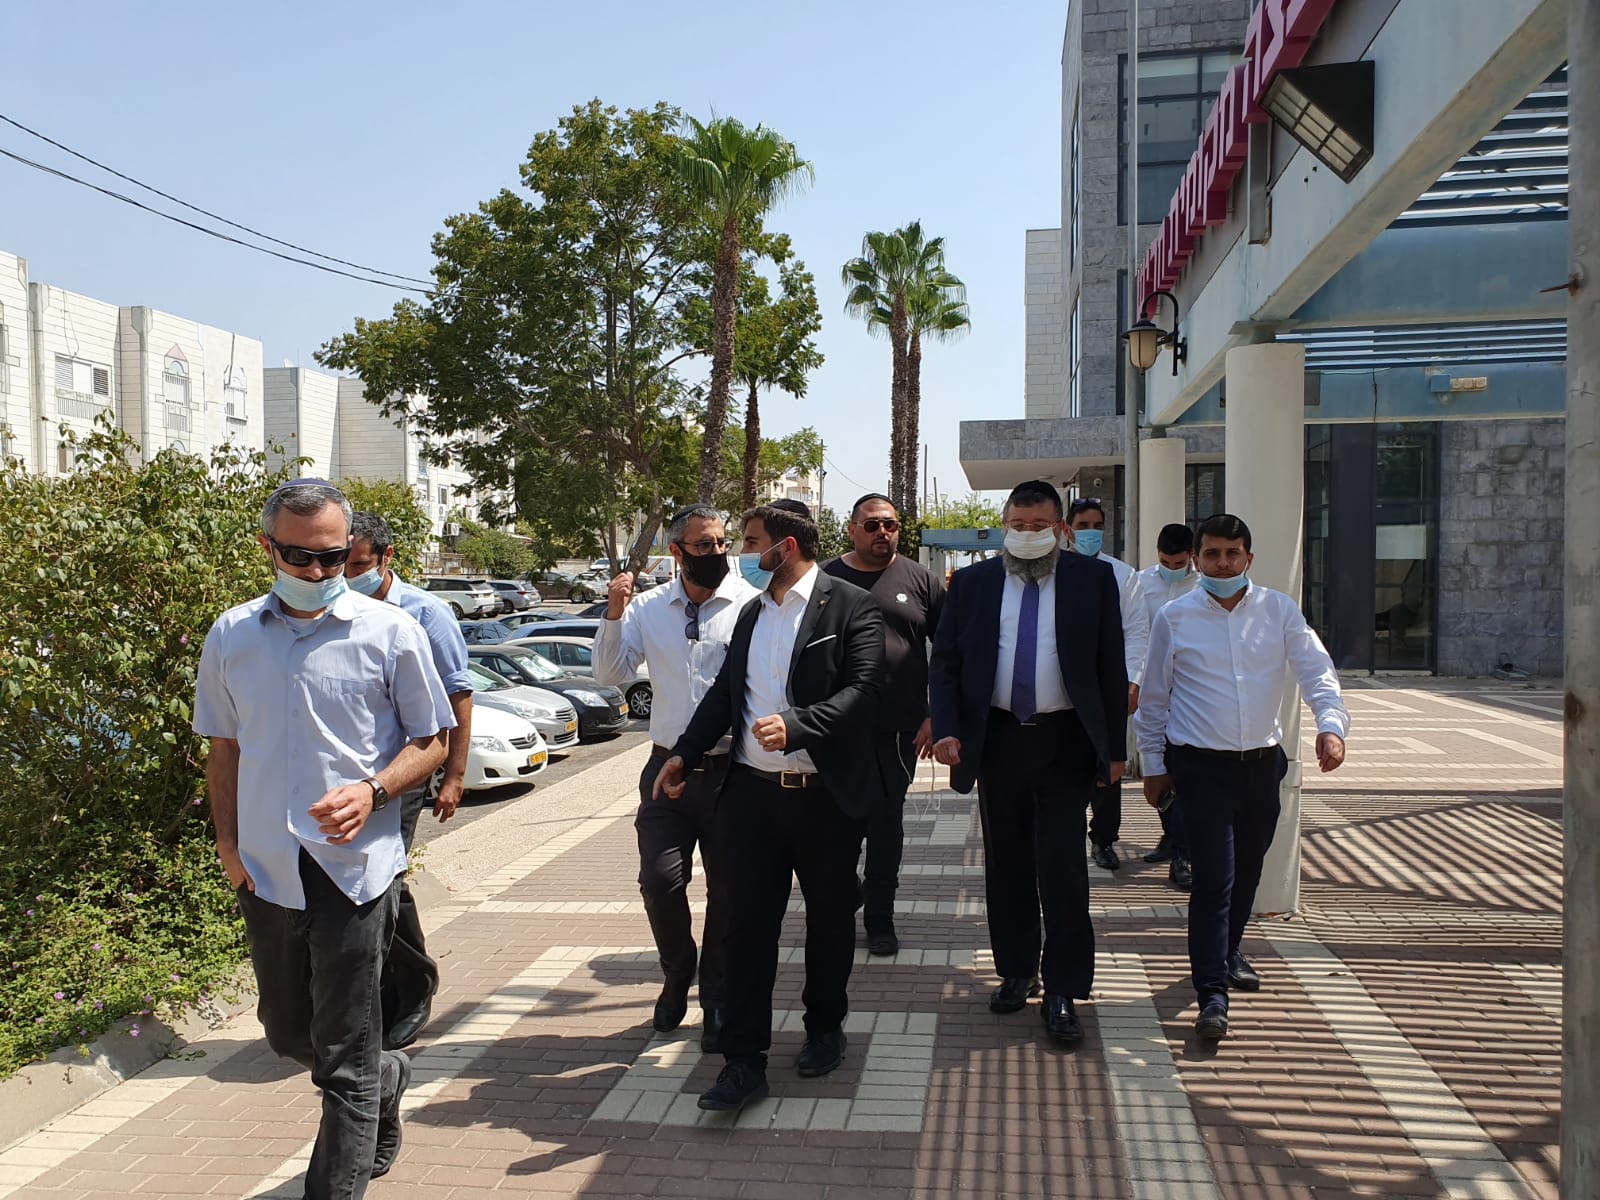 סגן שר הפנים, הפריפריה, נגב וגליל, הרב יואב בן צור, הגיע לסיור ופגישת עבודה עם ראש העירייה והנציגים המקומיים